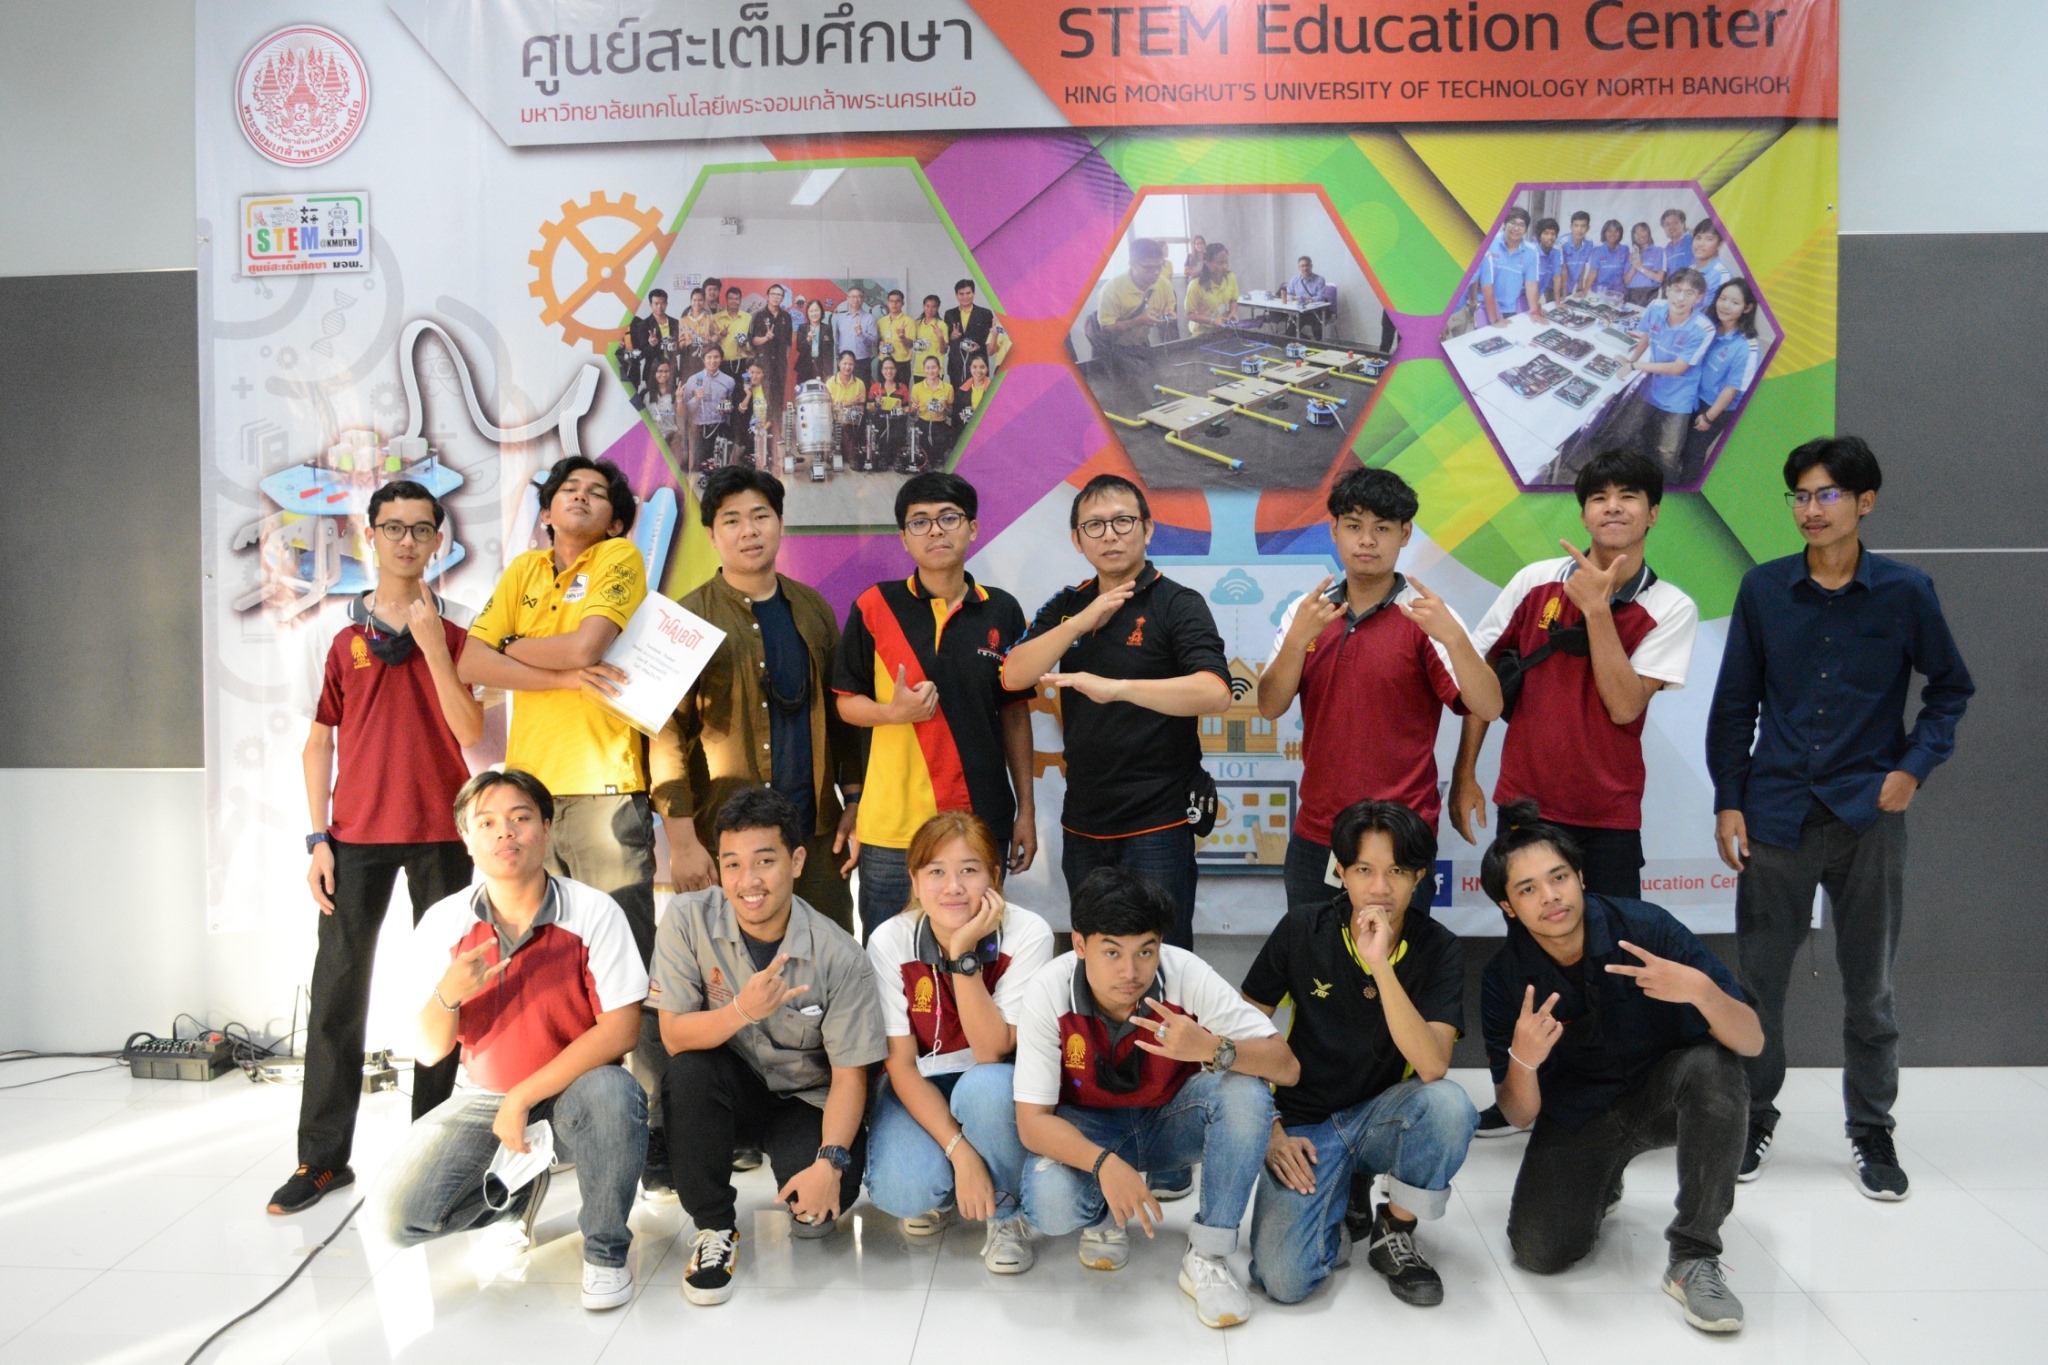 ศูนย์สะเต็มศึกษา มจพ. จัดการแข่งขัน “KM STEM Robotics Competition ครั้งที่ 2